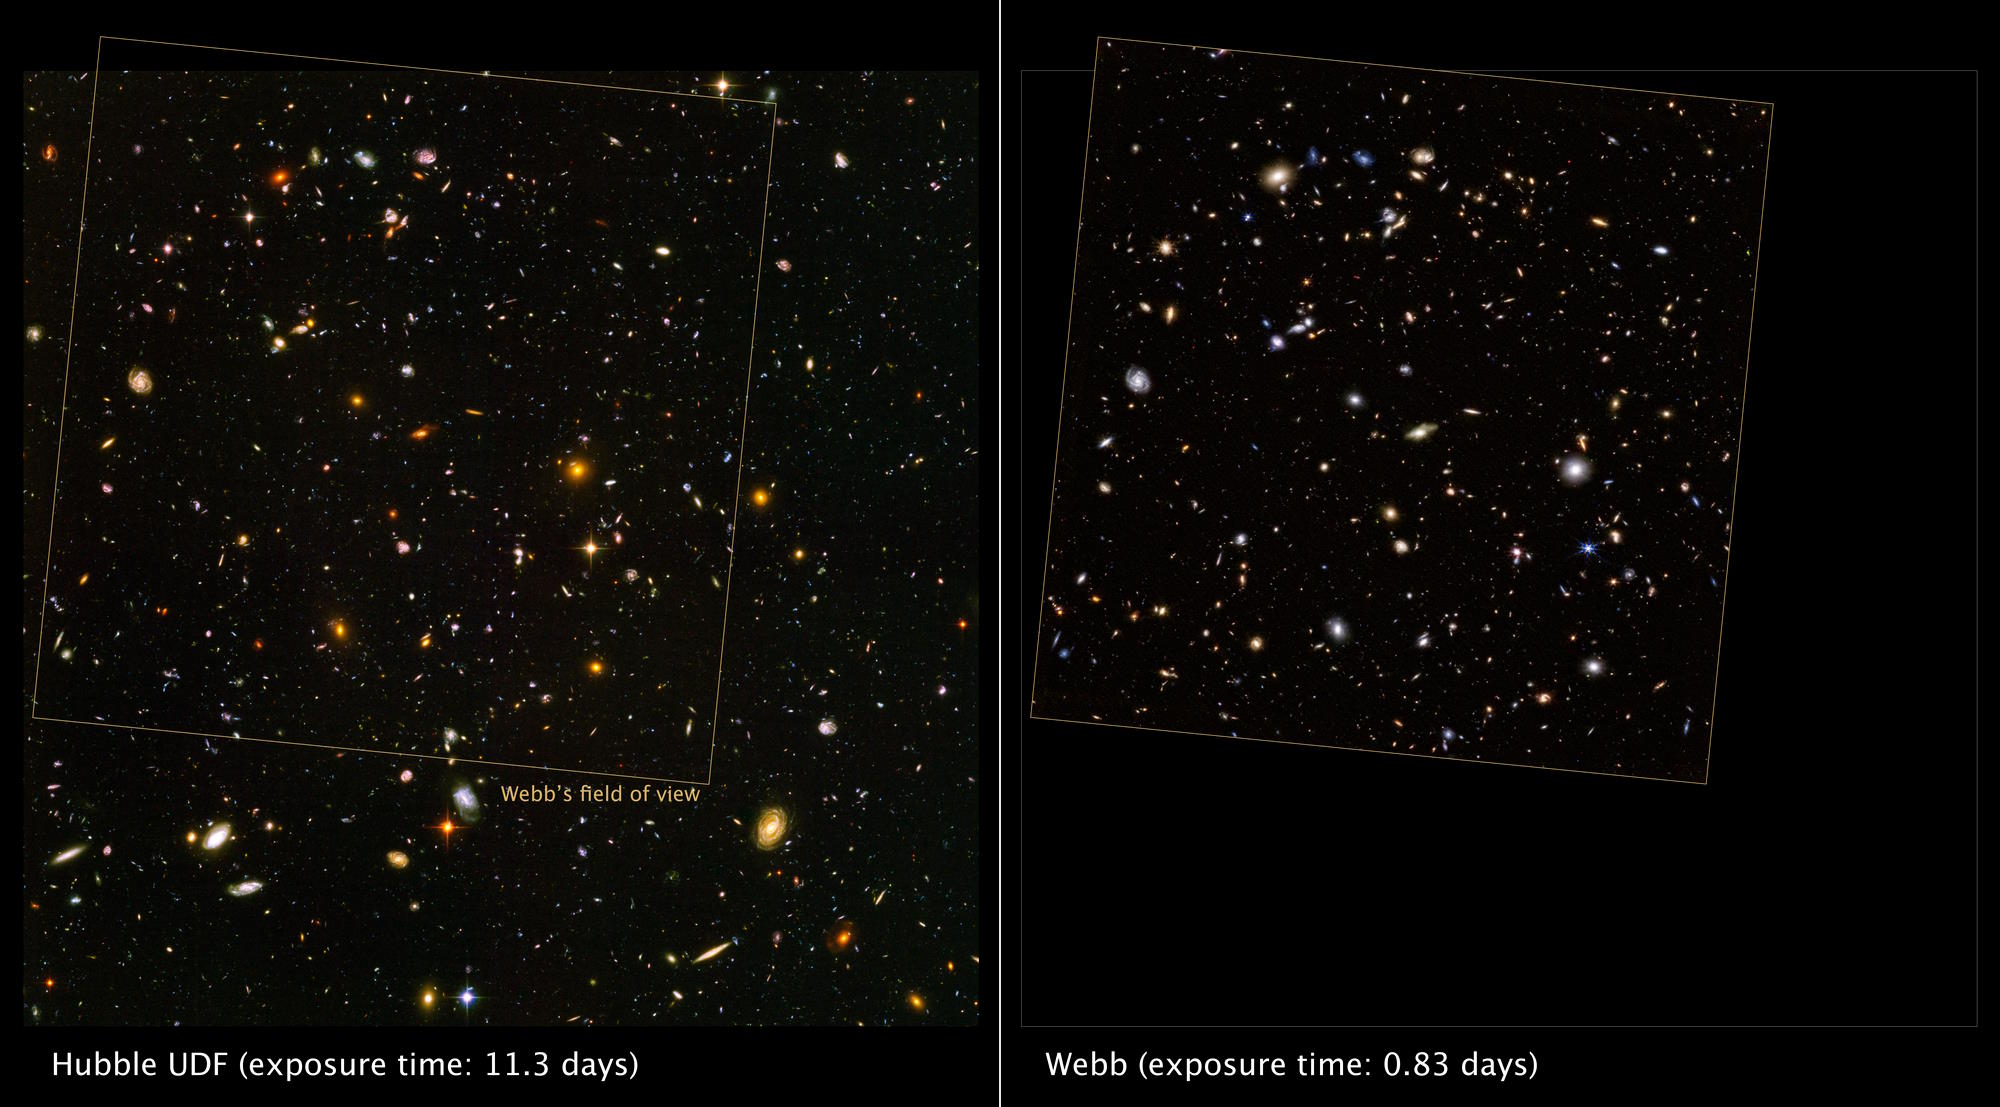 JWST vs Hubble deep field